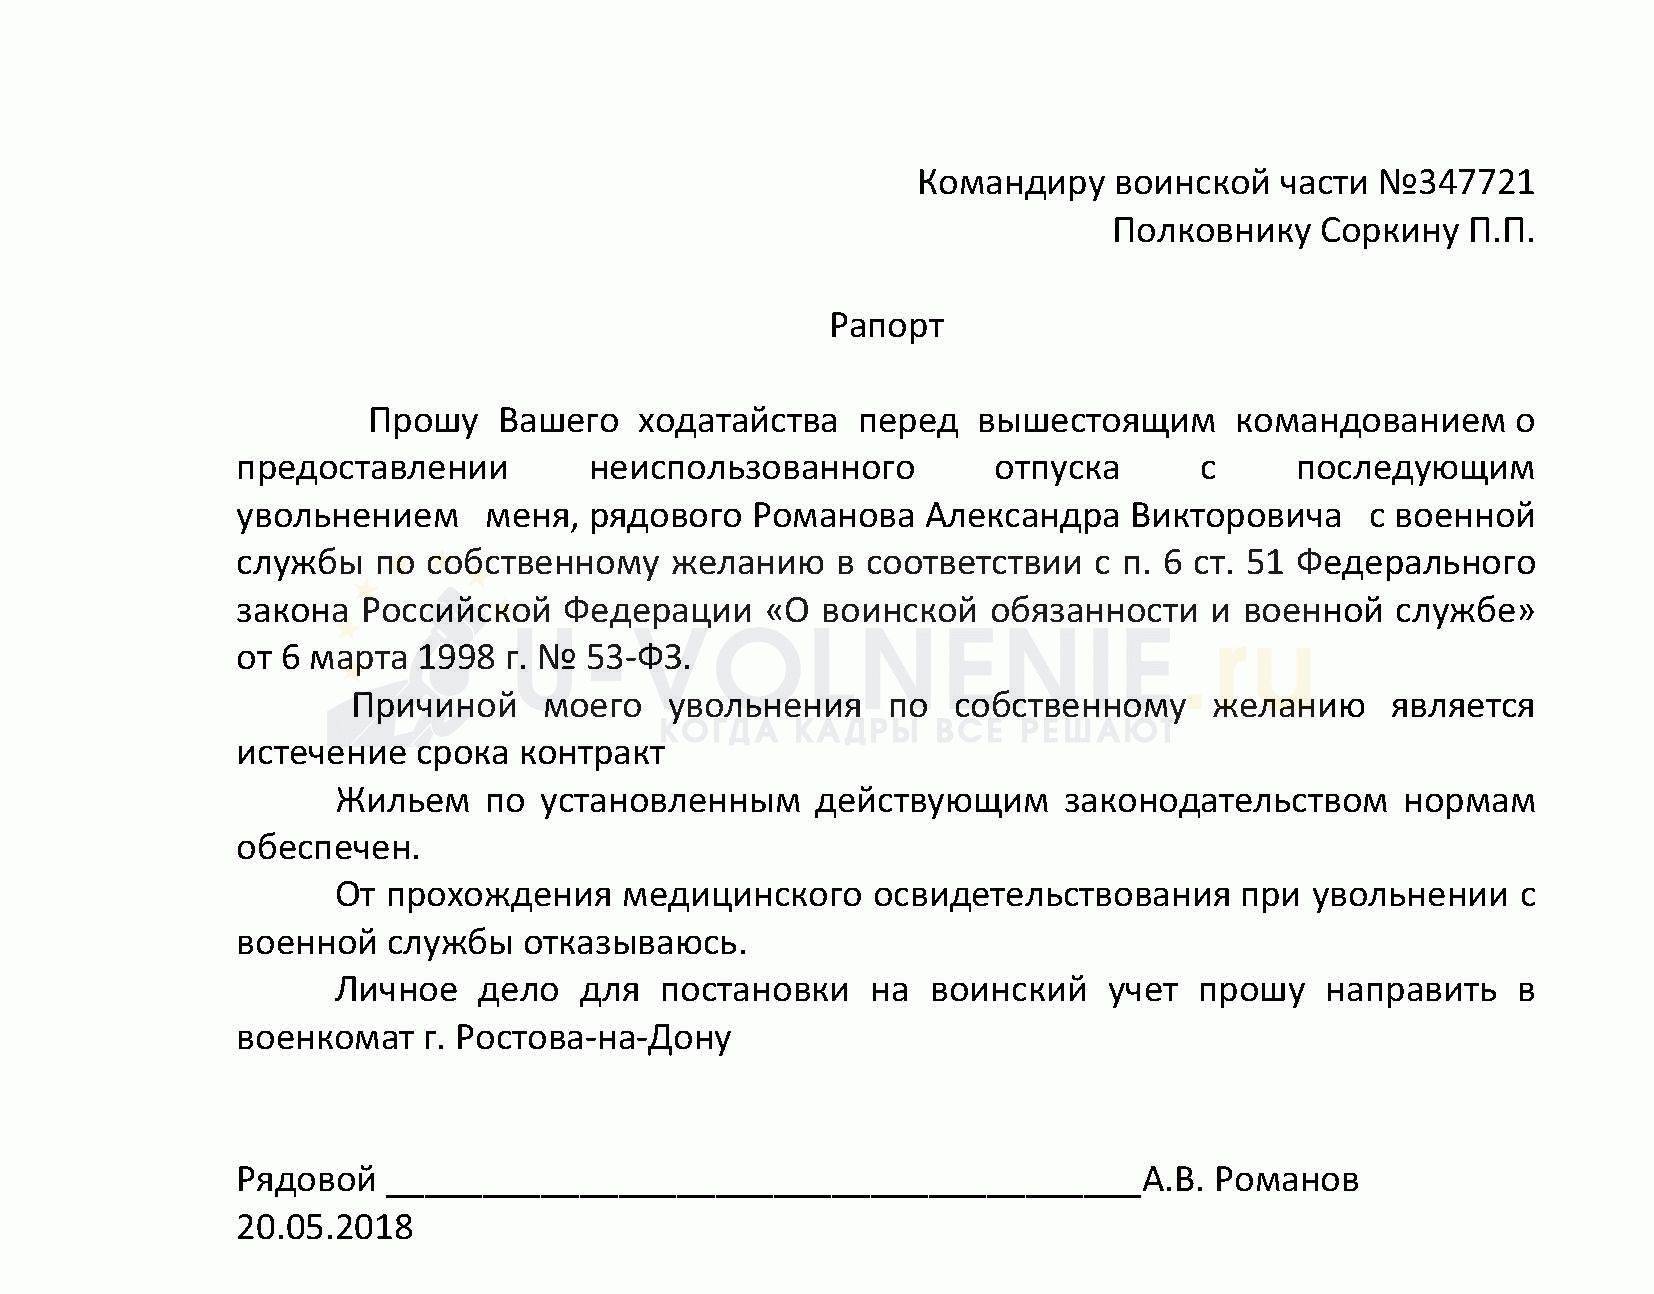 Образец рапорта на военную ипотеку, требования к документу